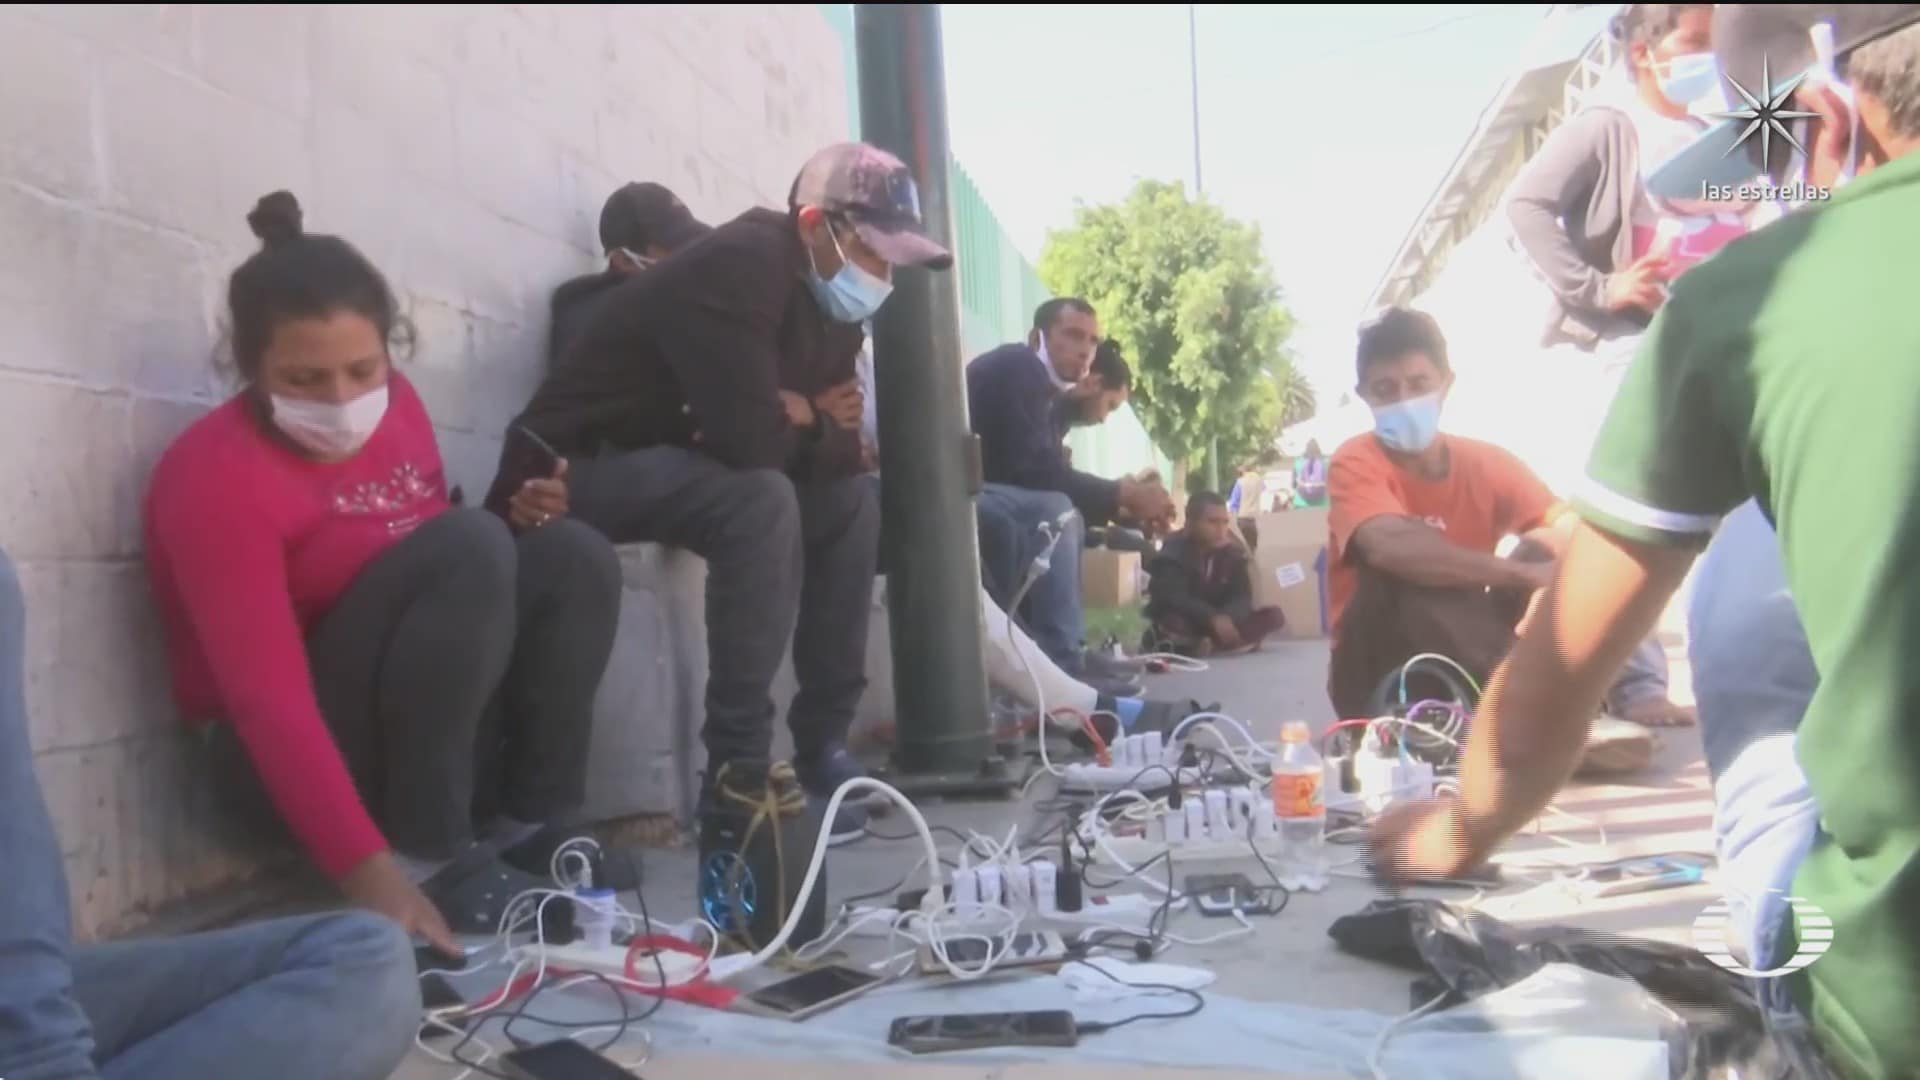 migrantes se organizan para mantener la bateria de sus celulares